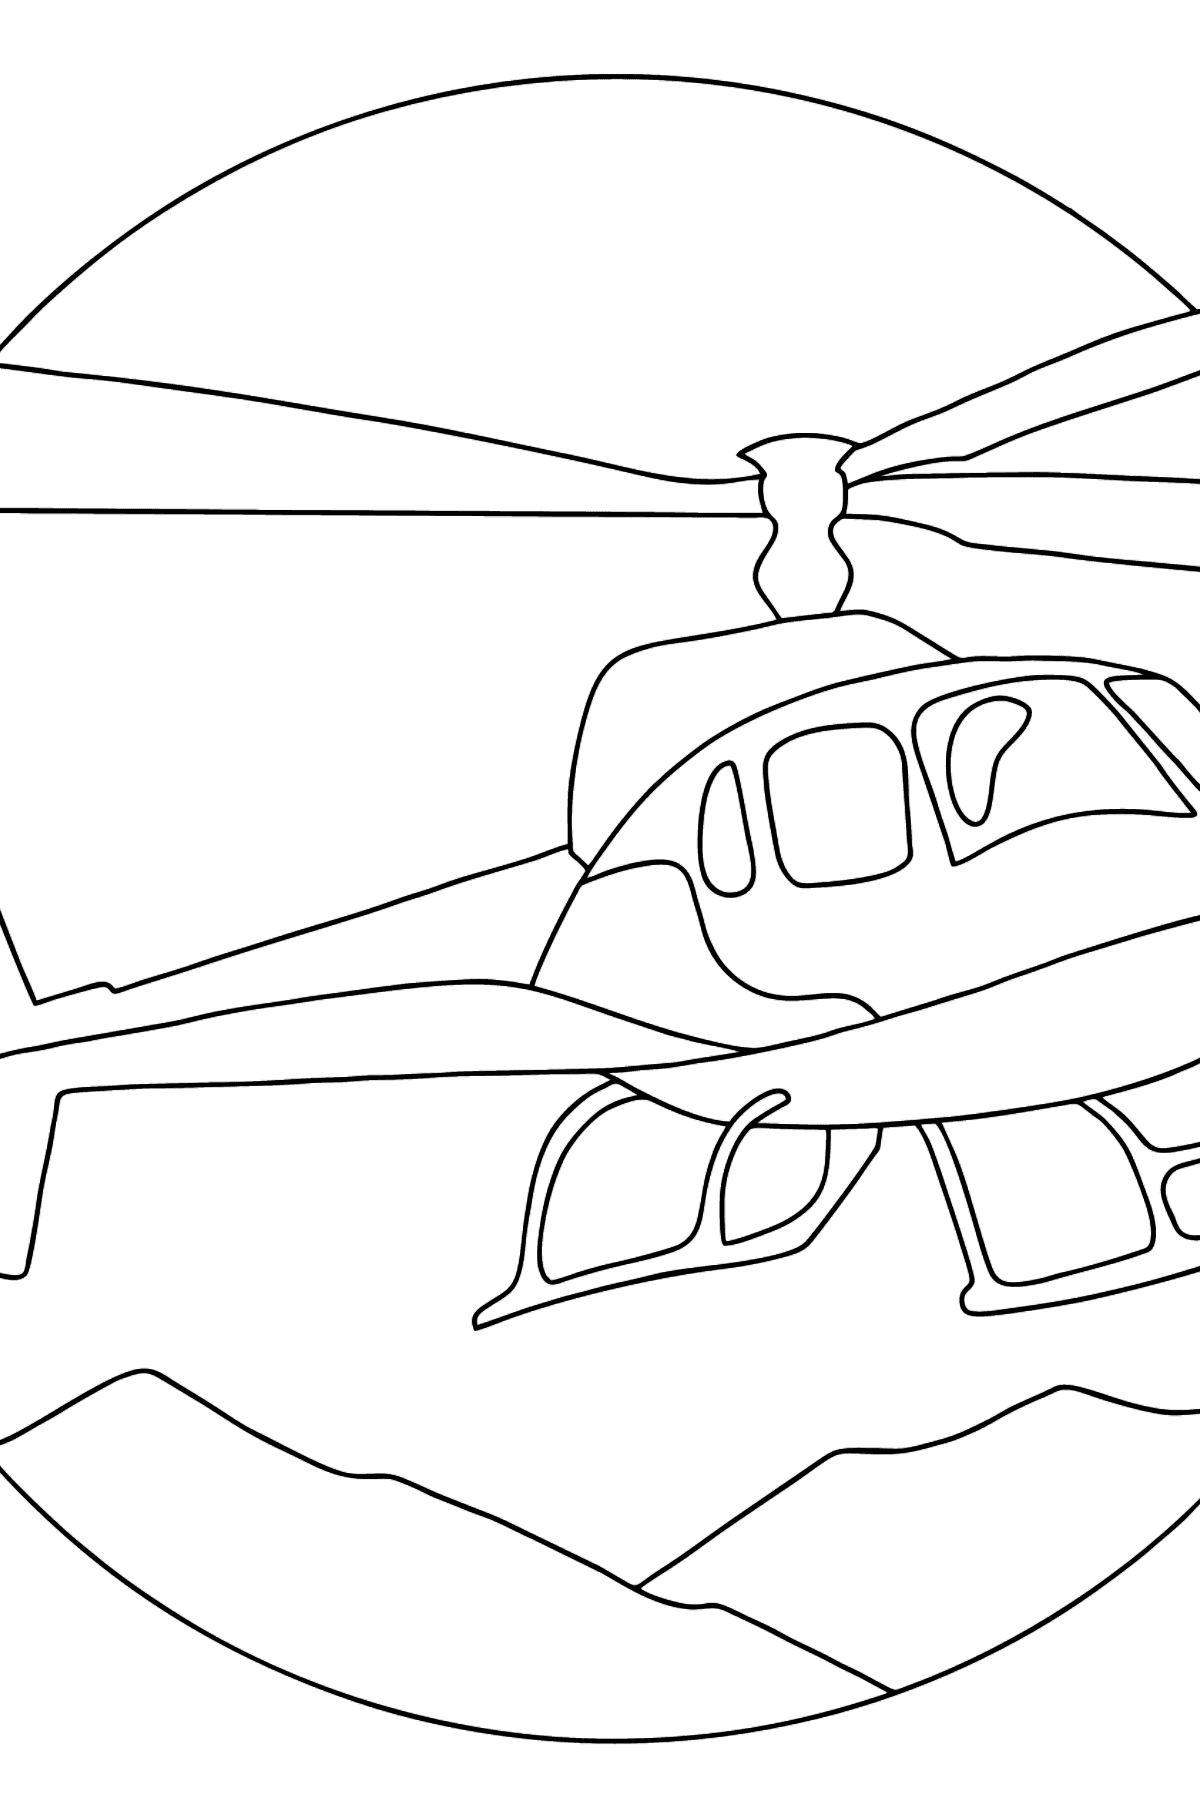 Dibujo para Colorear - Un Helicóptero de Ciudad - Dibujos para Colorear para Niños